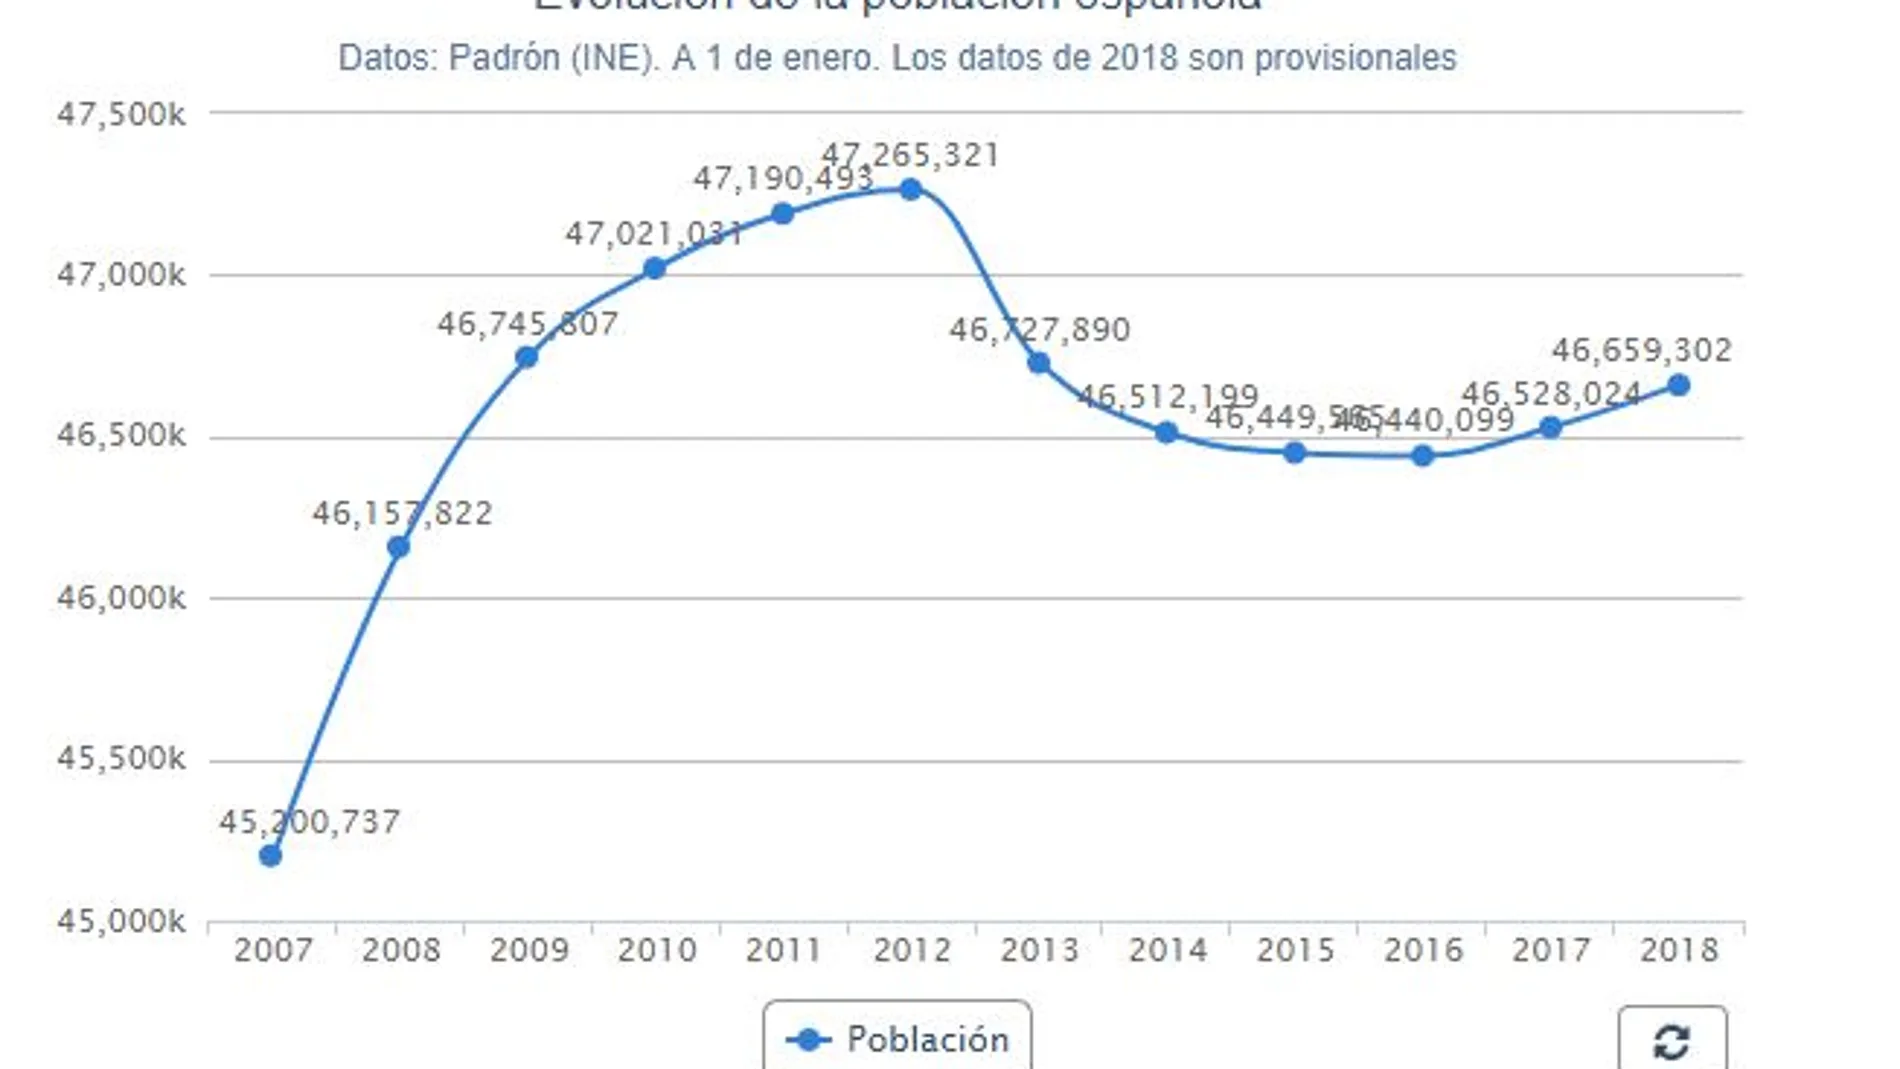 La población en España vuelve a crecer gracias al aumento de la inmigración